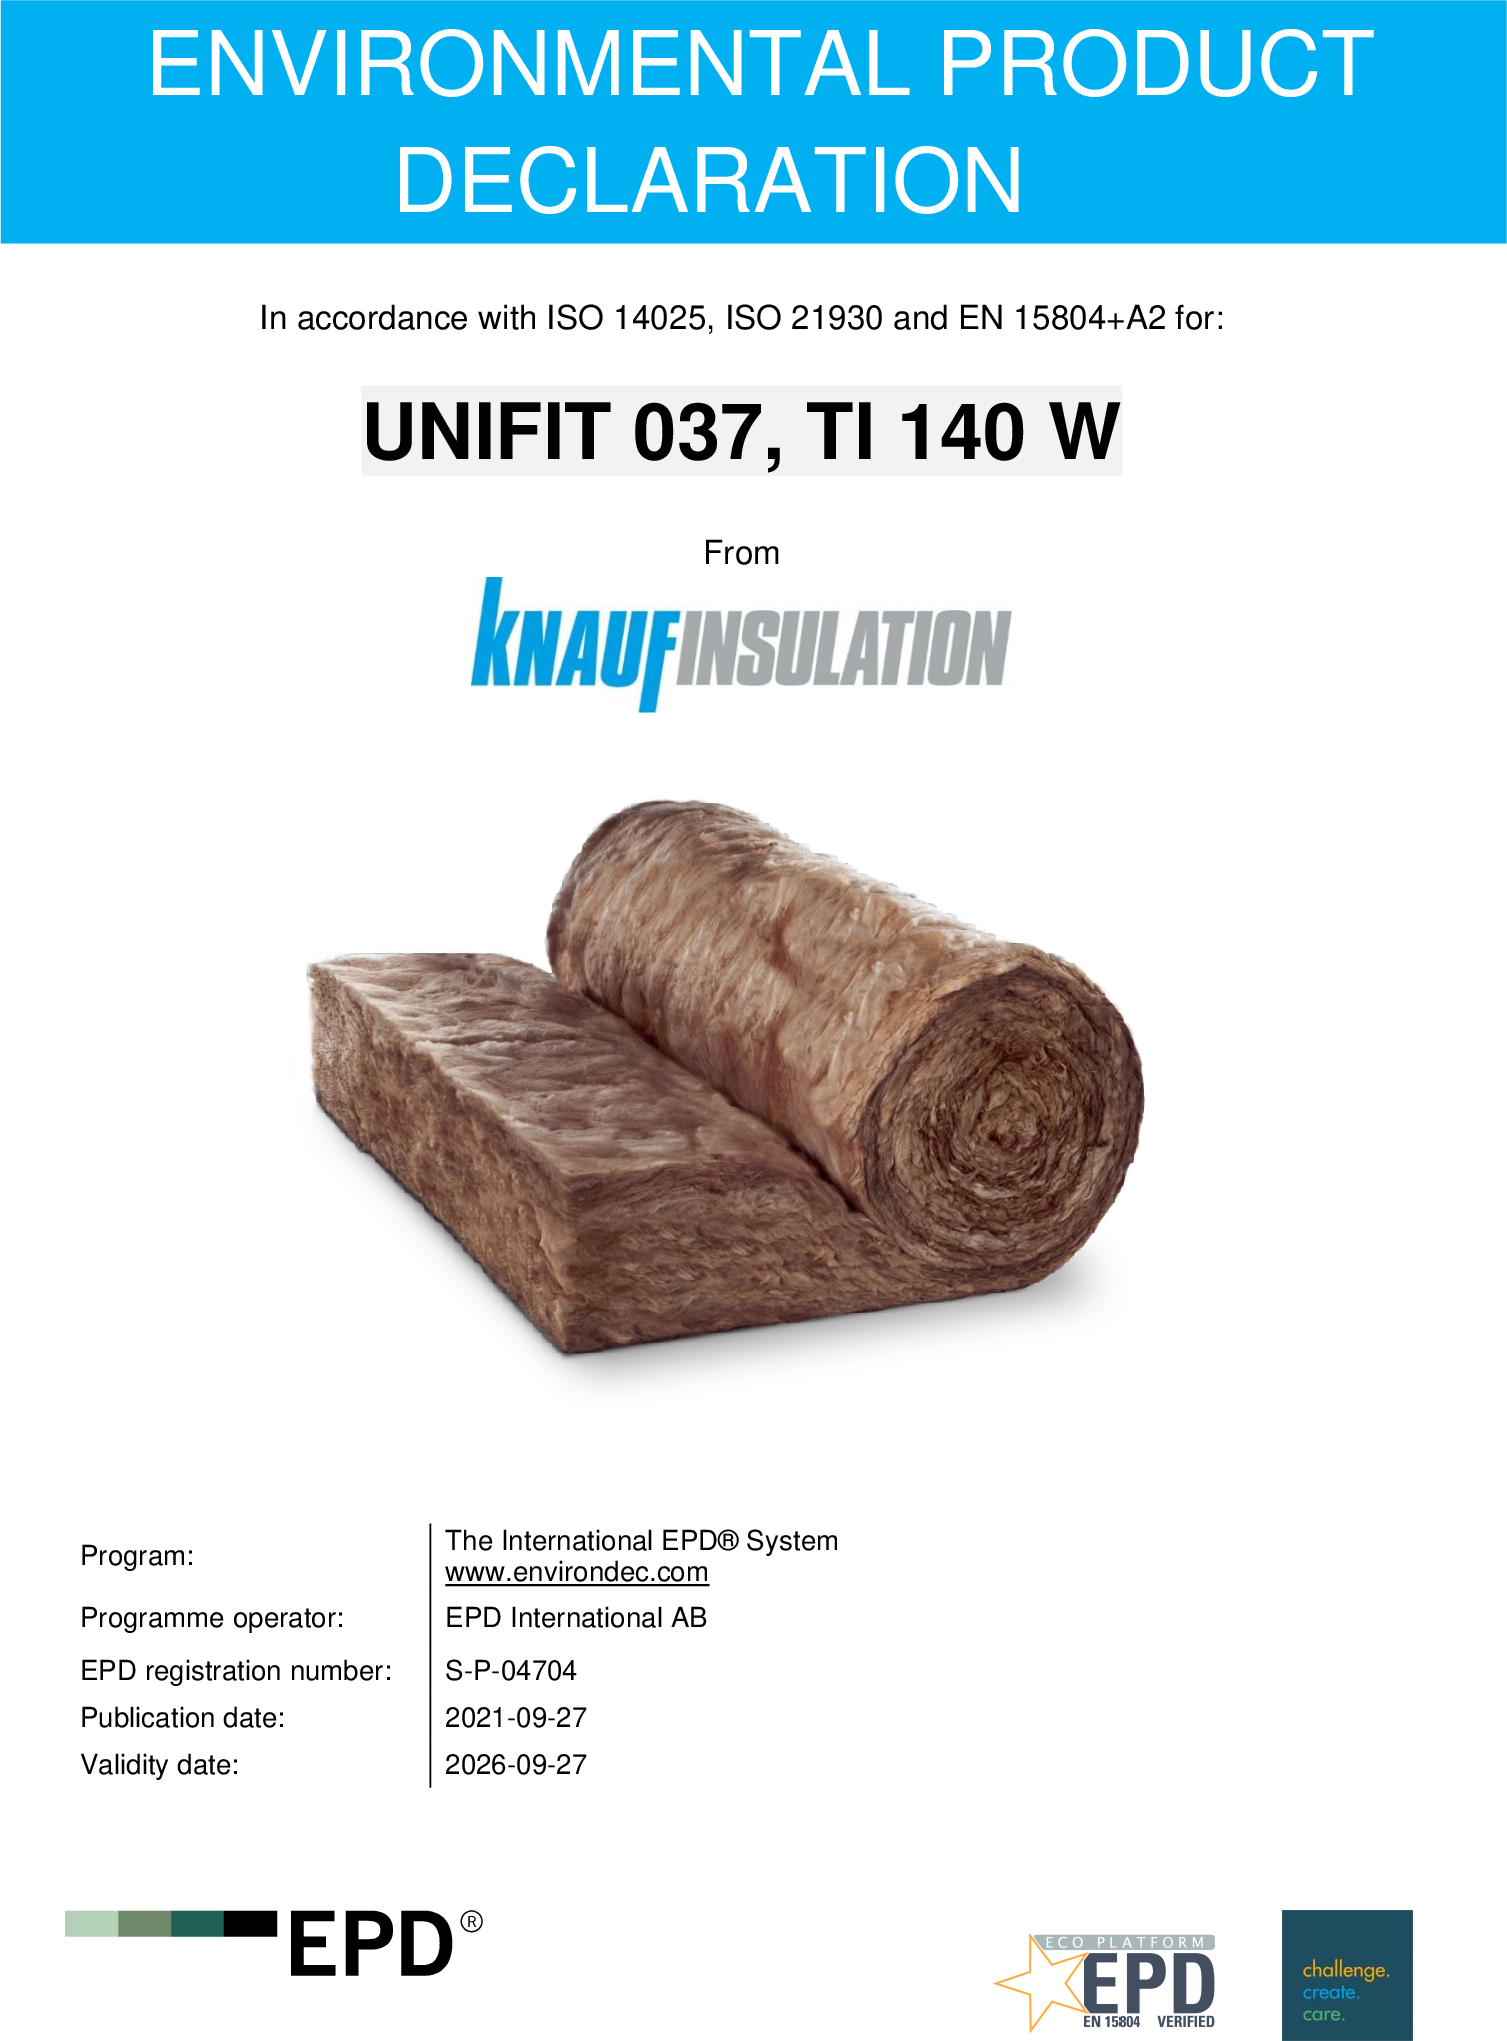 Knauf Insulation German Plants-UNIFIT 037, TI 140 W